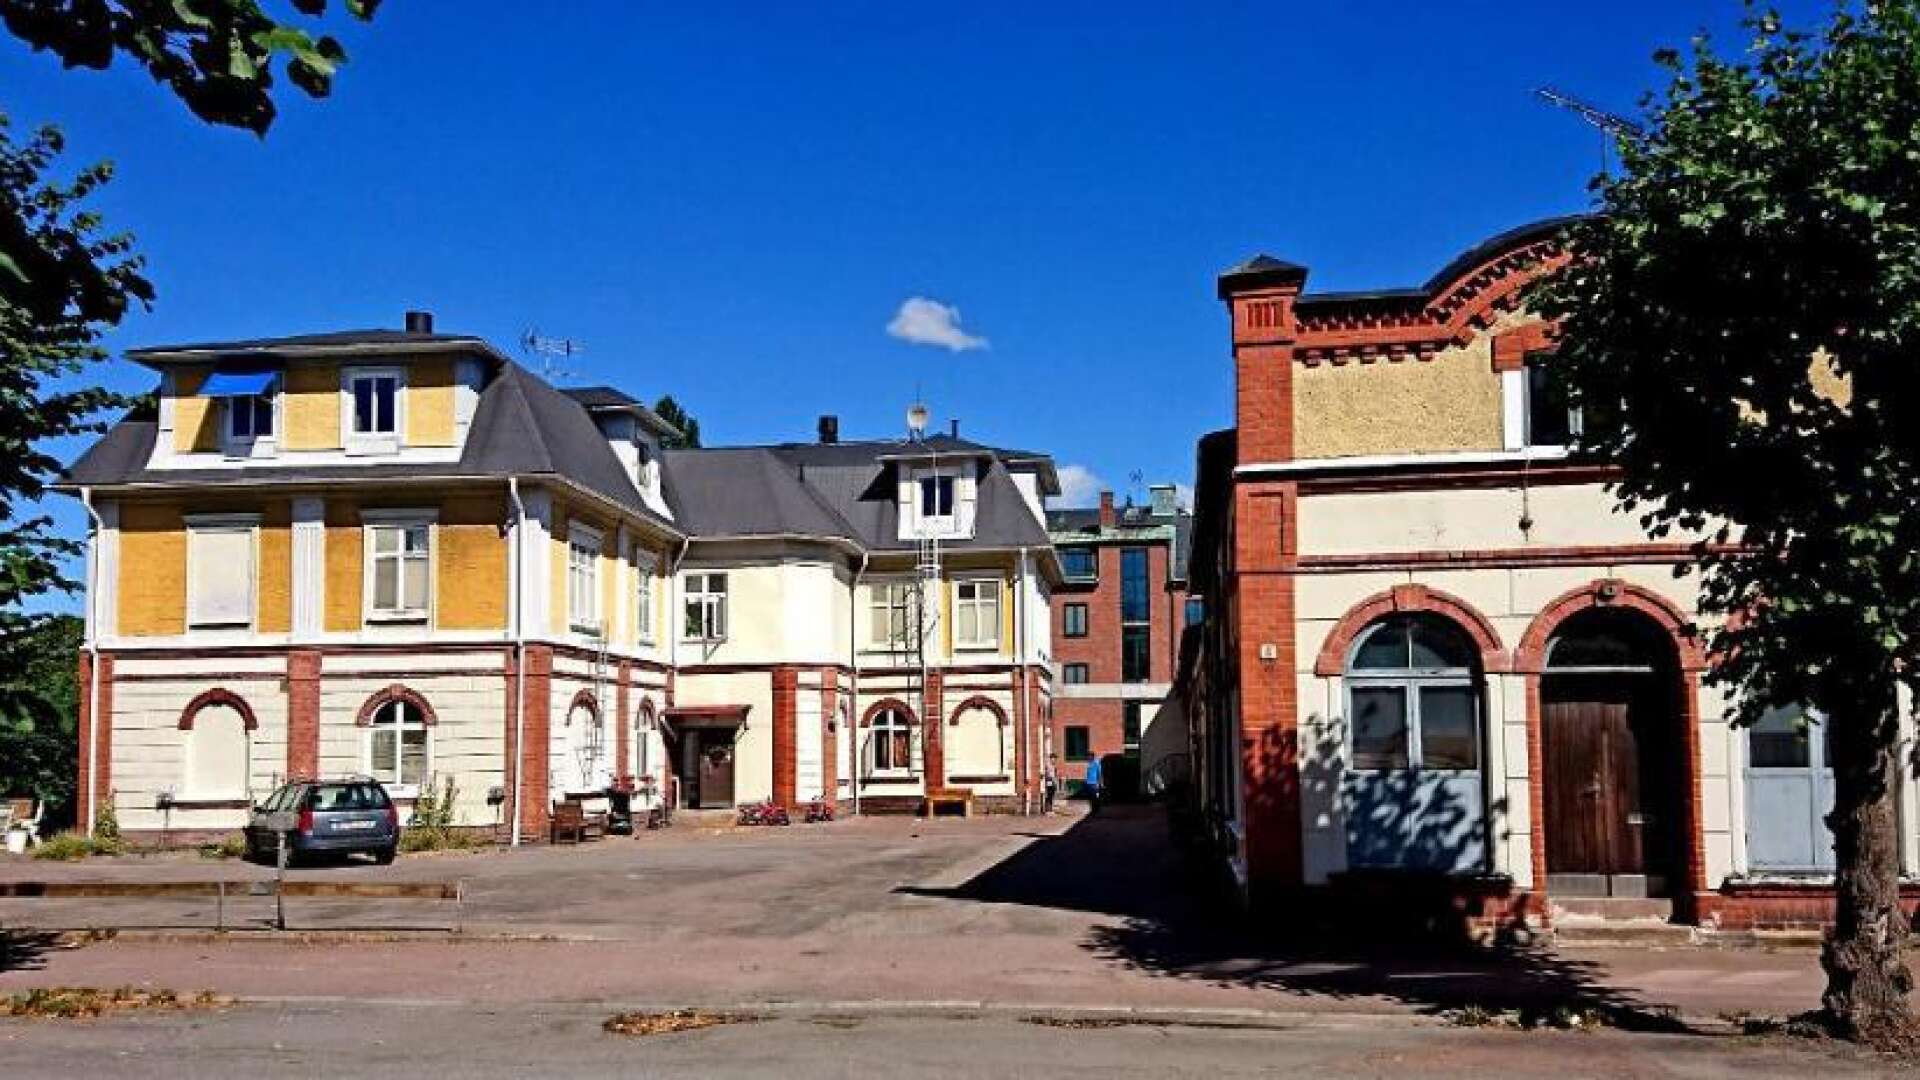 Det är 116 år sedan Ludvig Bäärnhielm lät bygga det ståtliga huset strax intill stationshuset där han själv hade både bostad och arbetsplats. Både huvudbyggnad och gårdslänga finns kvar, men med andra användningsområden än från början.